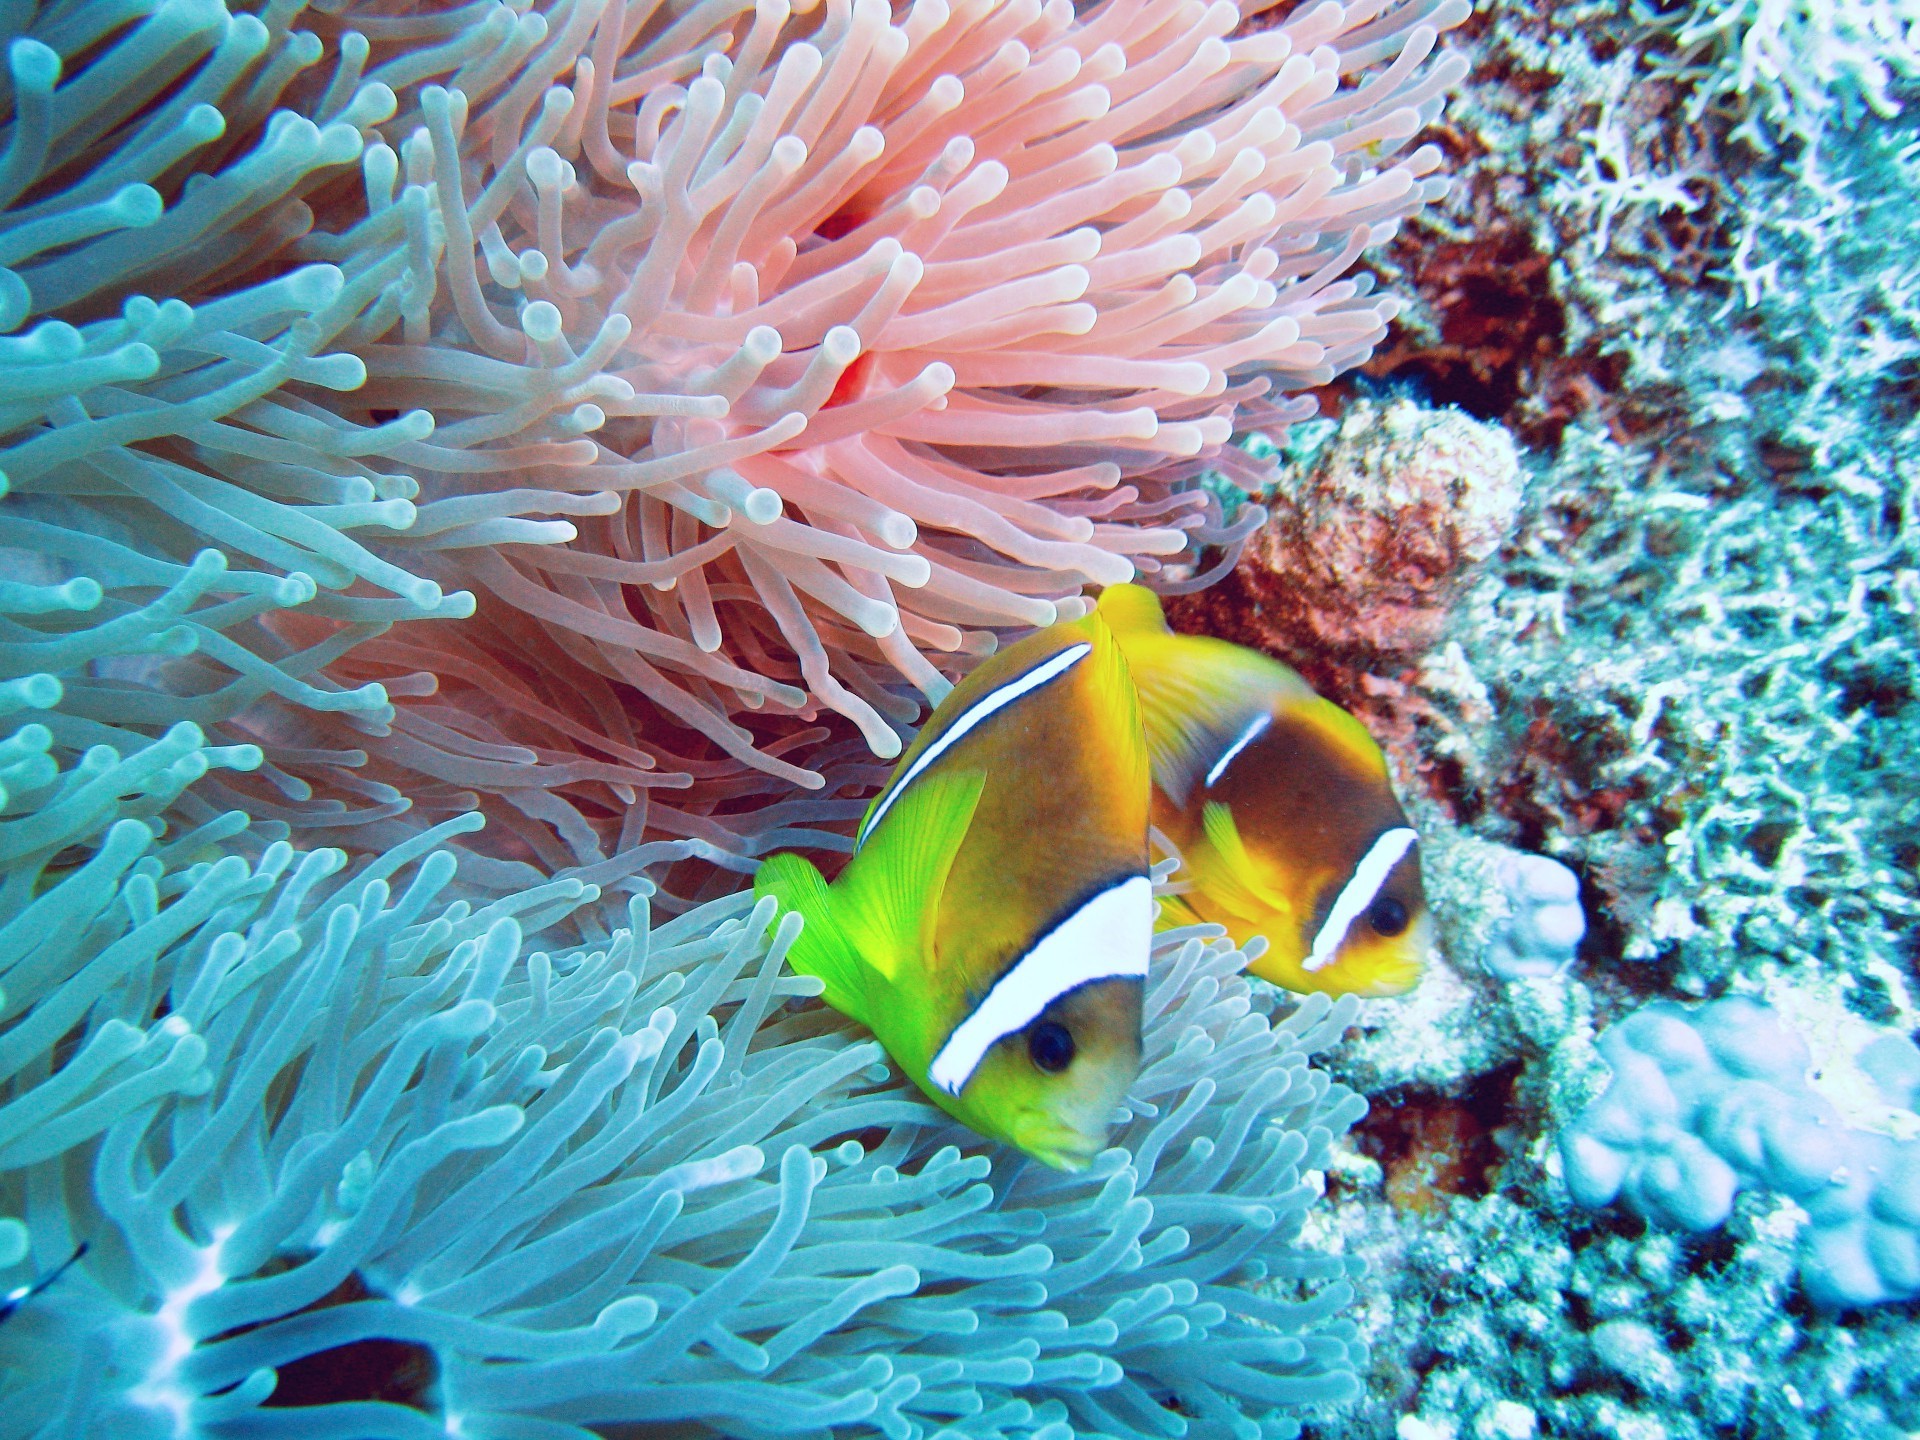 marine life underwater coral fish reef ocean sea anemone invertebrate tropical wildlife marine water aquatic animal diving submarine scuba aquarium exotic snorkeling